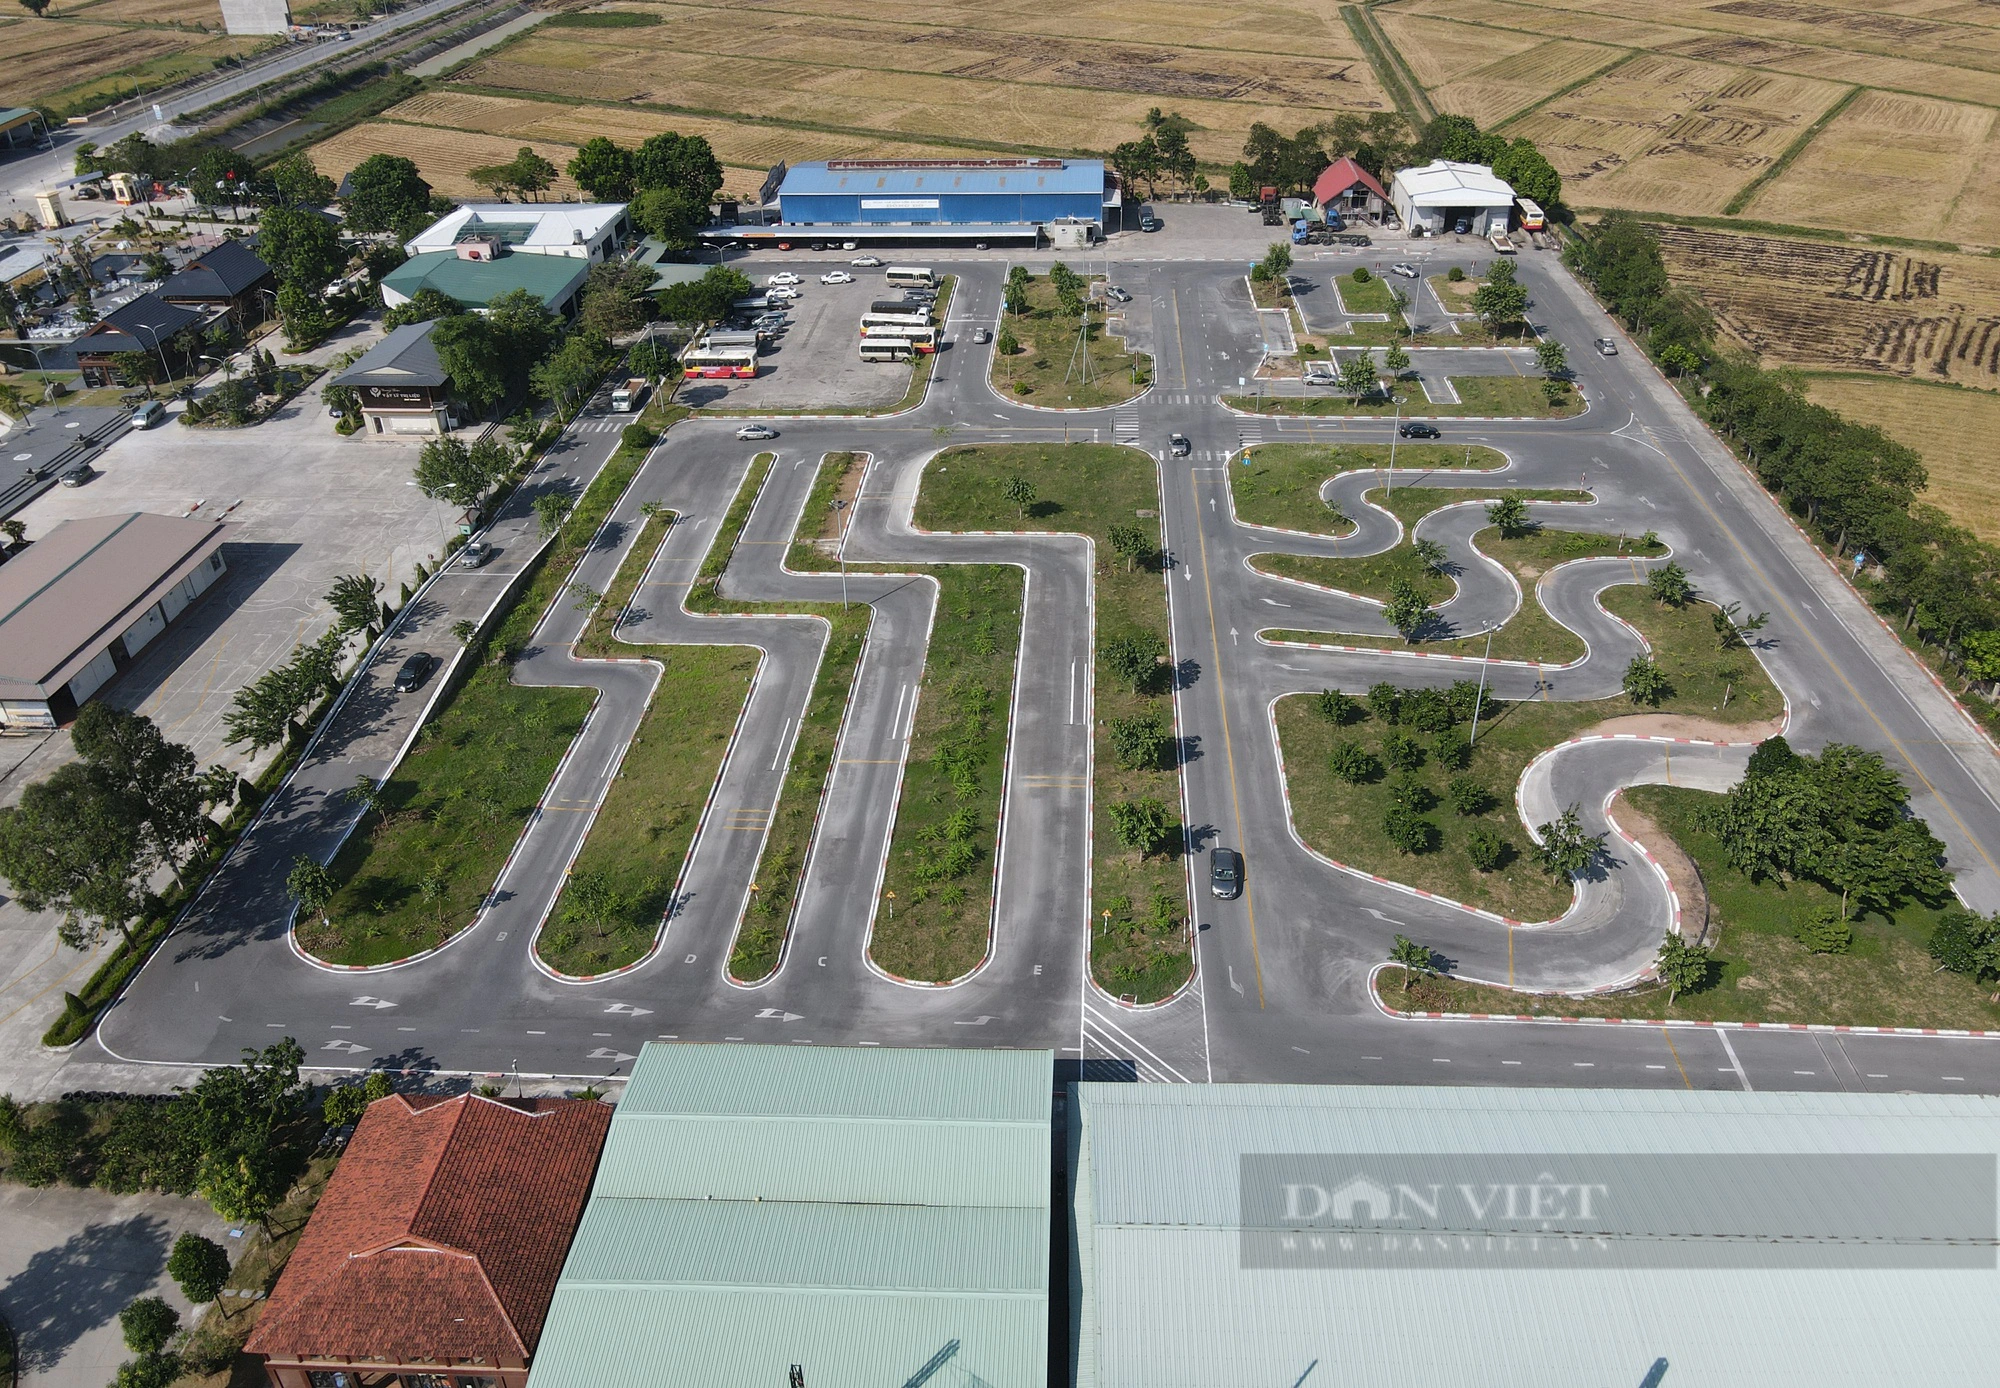 Trung tâm dạy nghề và sát hạch lái xe Đông Đô (Bắc Ninh) sử dụng hàng nghìn m2 đất không đúng mục đích - Ảnh 9.